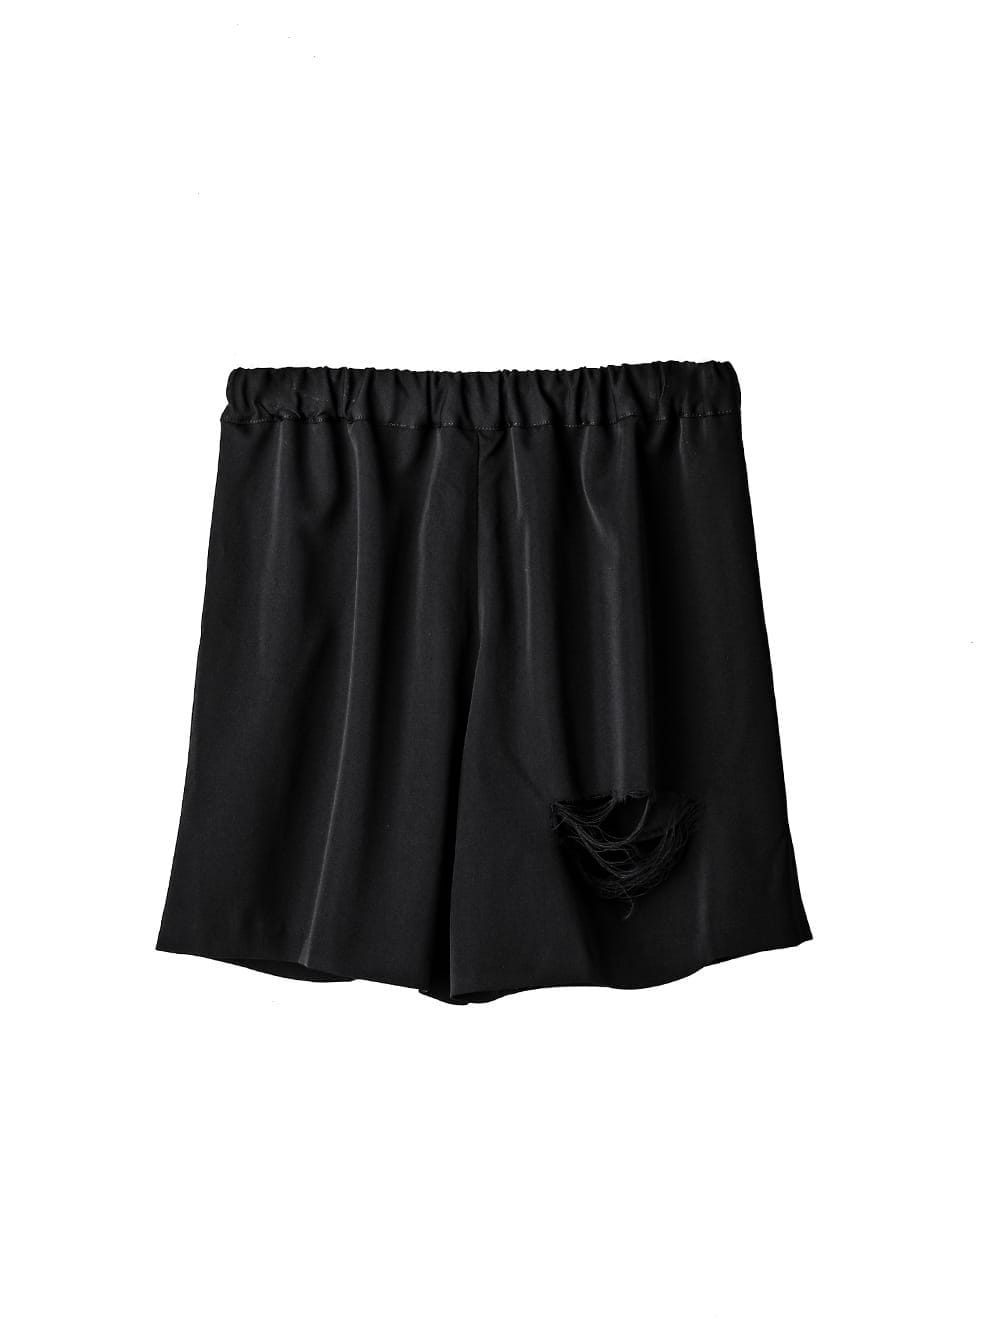 trunks shorts.(clash)